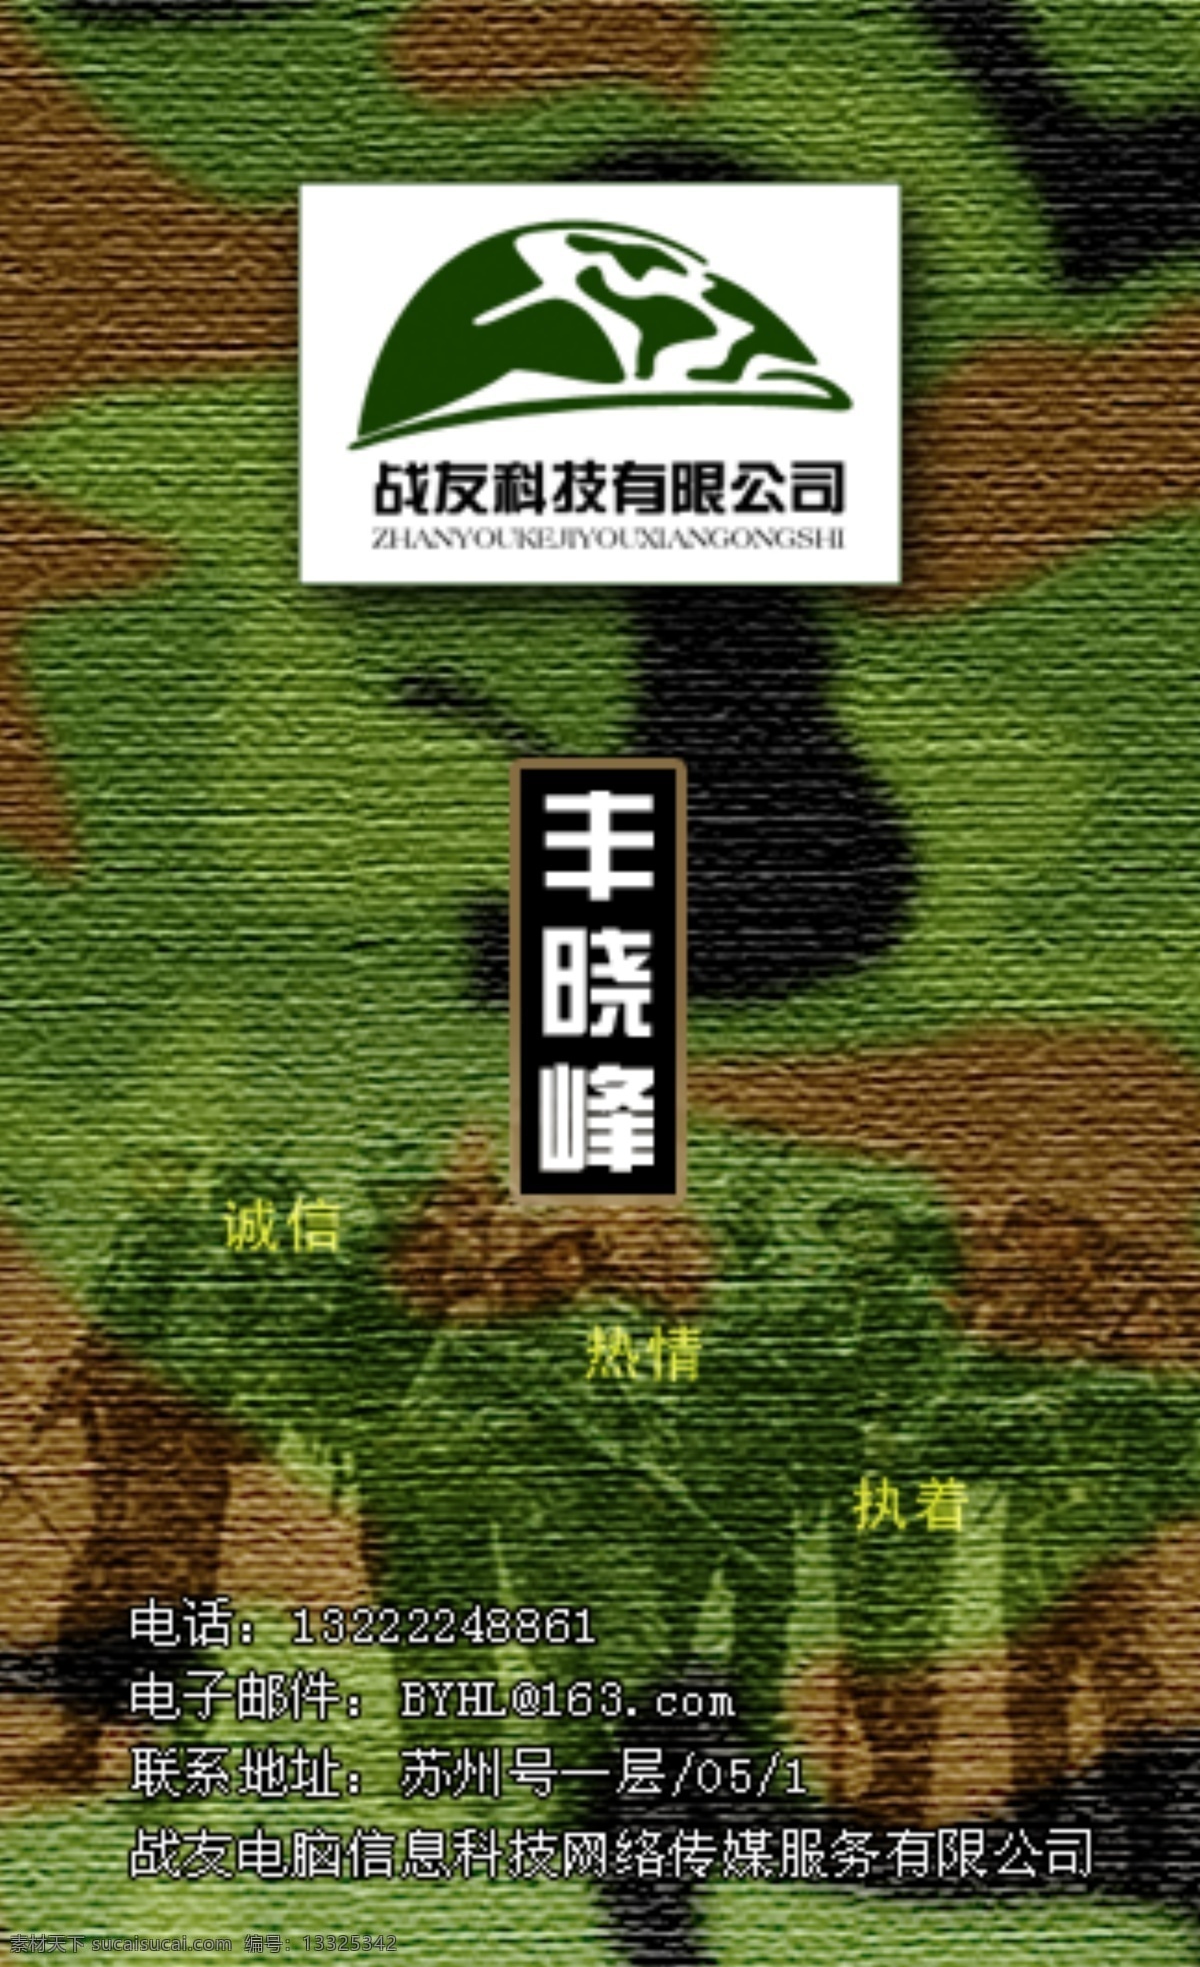 名片 模板 迷彩 名片设计 设计名片 丰晓峰 苏州 天堂 苏州天堂设计 天堂广告 广告设计模板 源文件